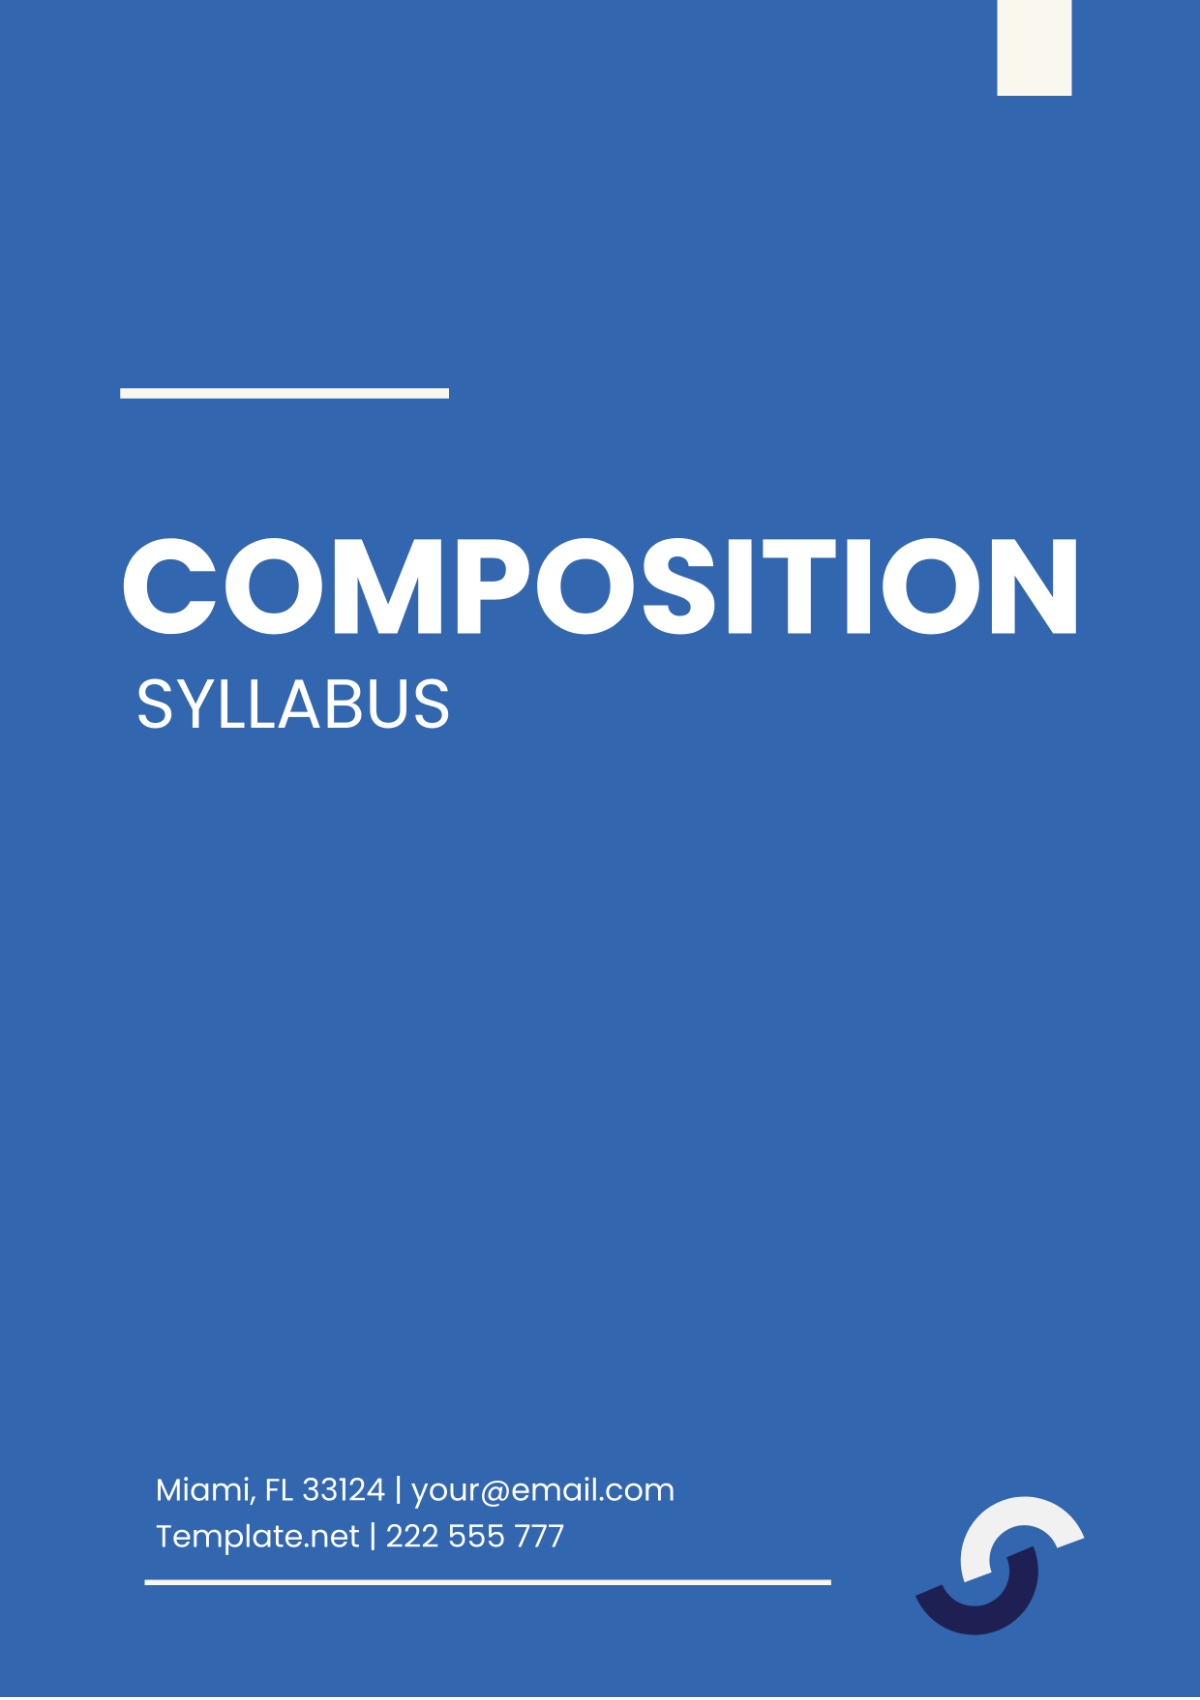 Composition Syllabus Template